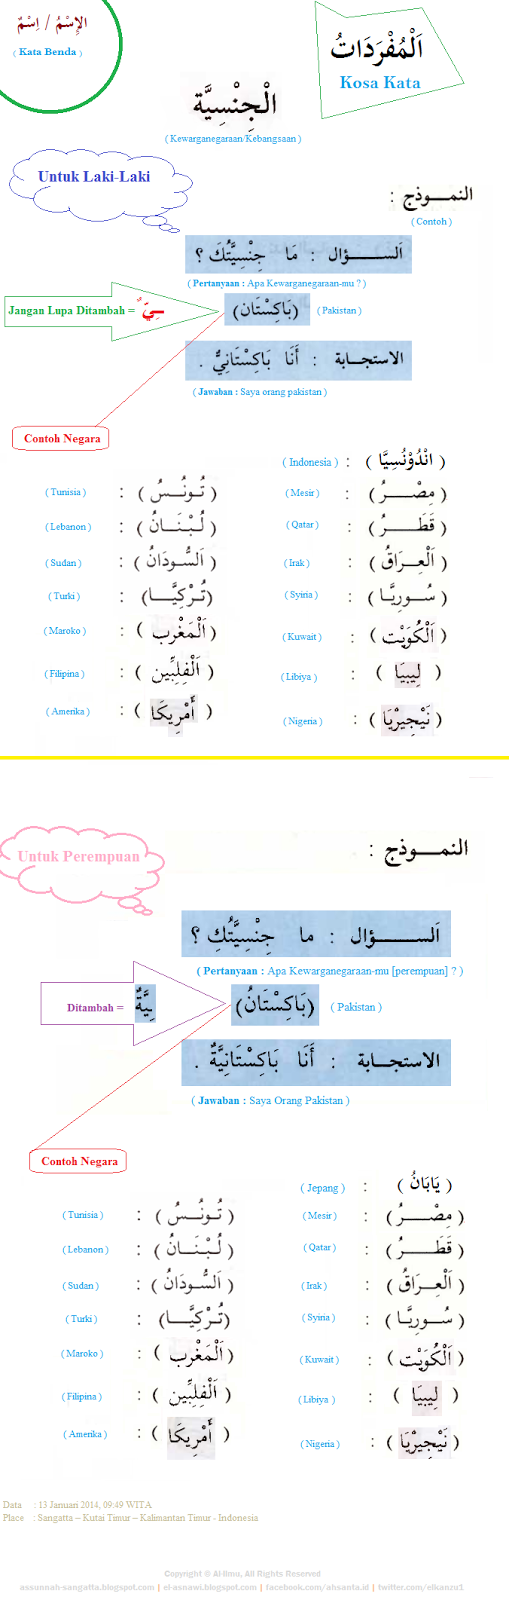 Nama Negara Dalam Bahasa Arab